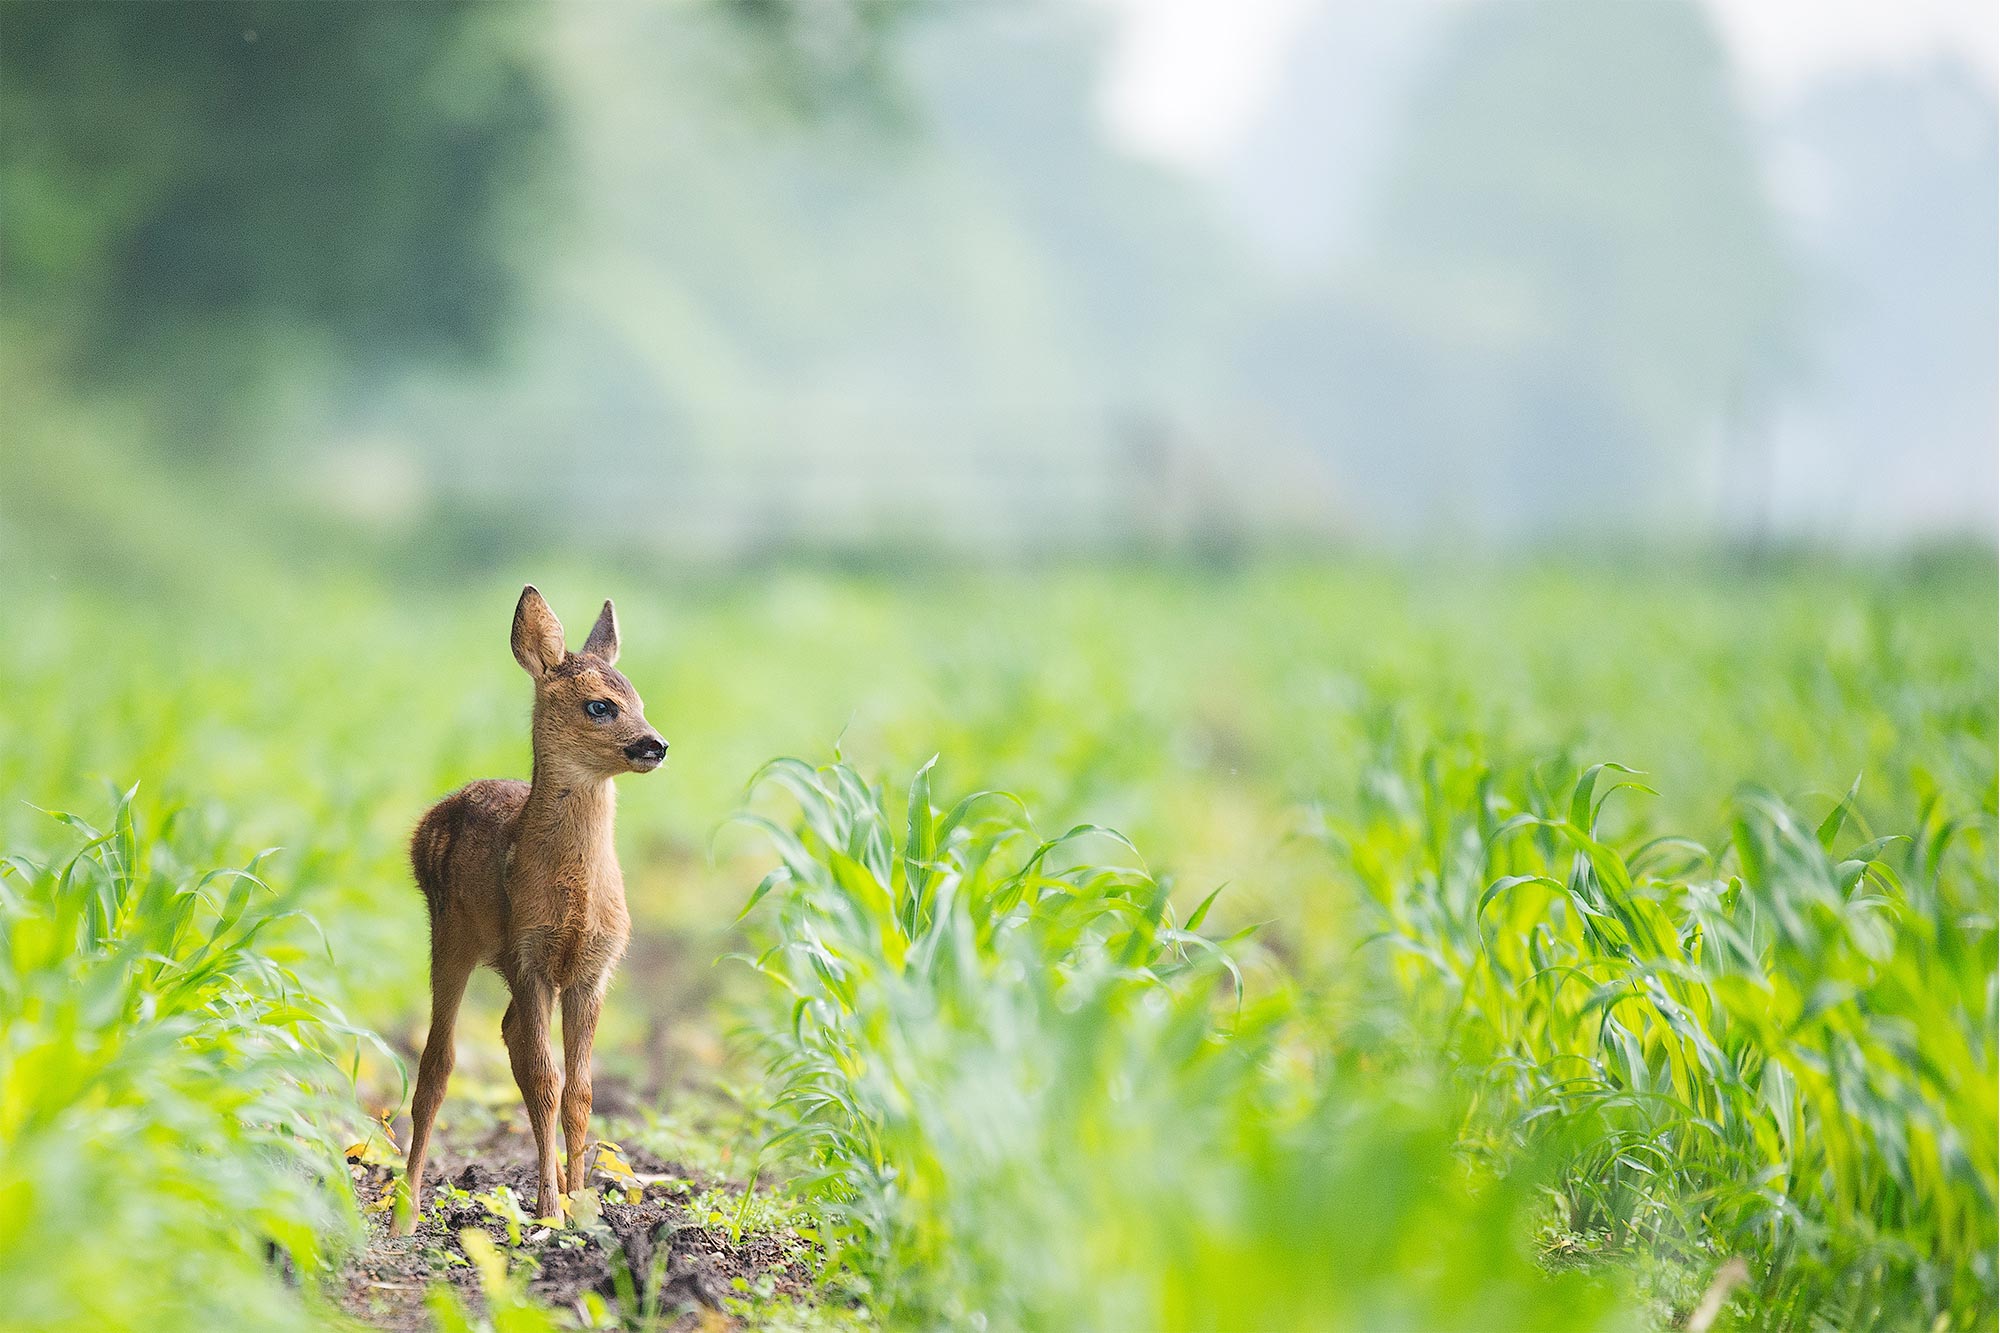 Baby deer in a grassy field